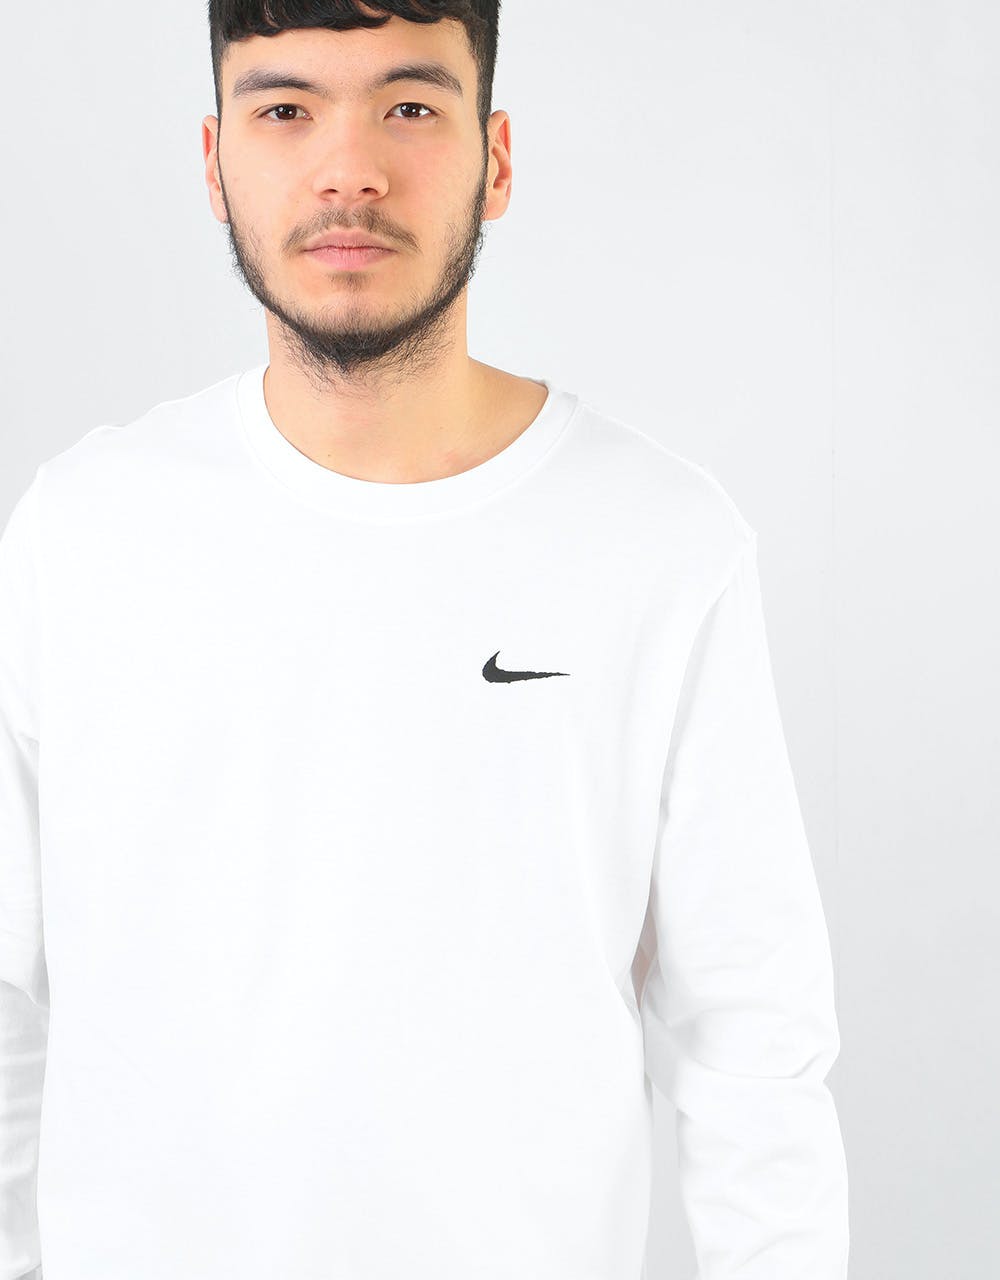 Nike SB Snake L/S T-Shirt - White/Black